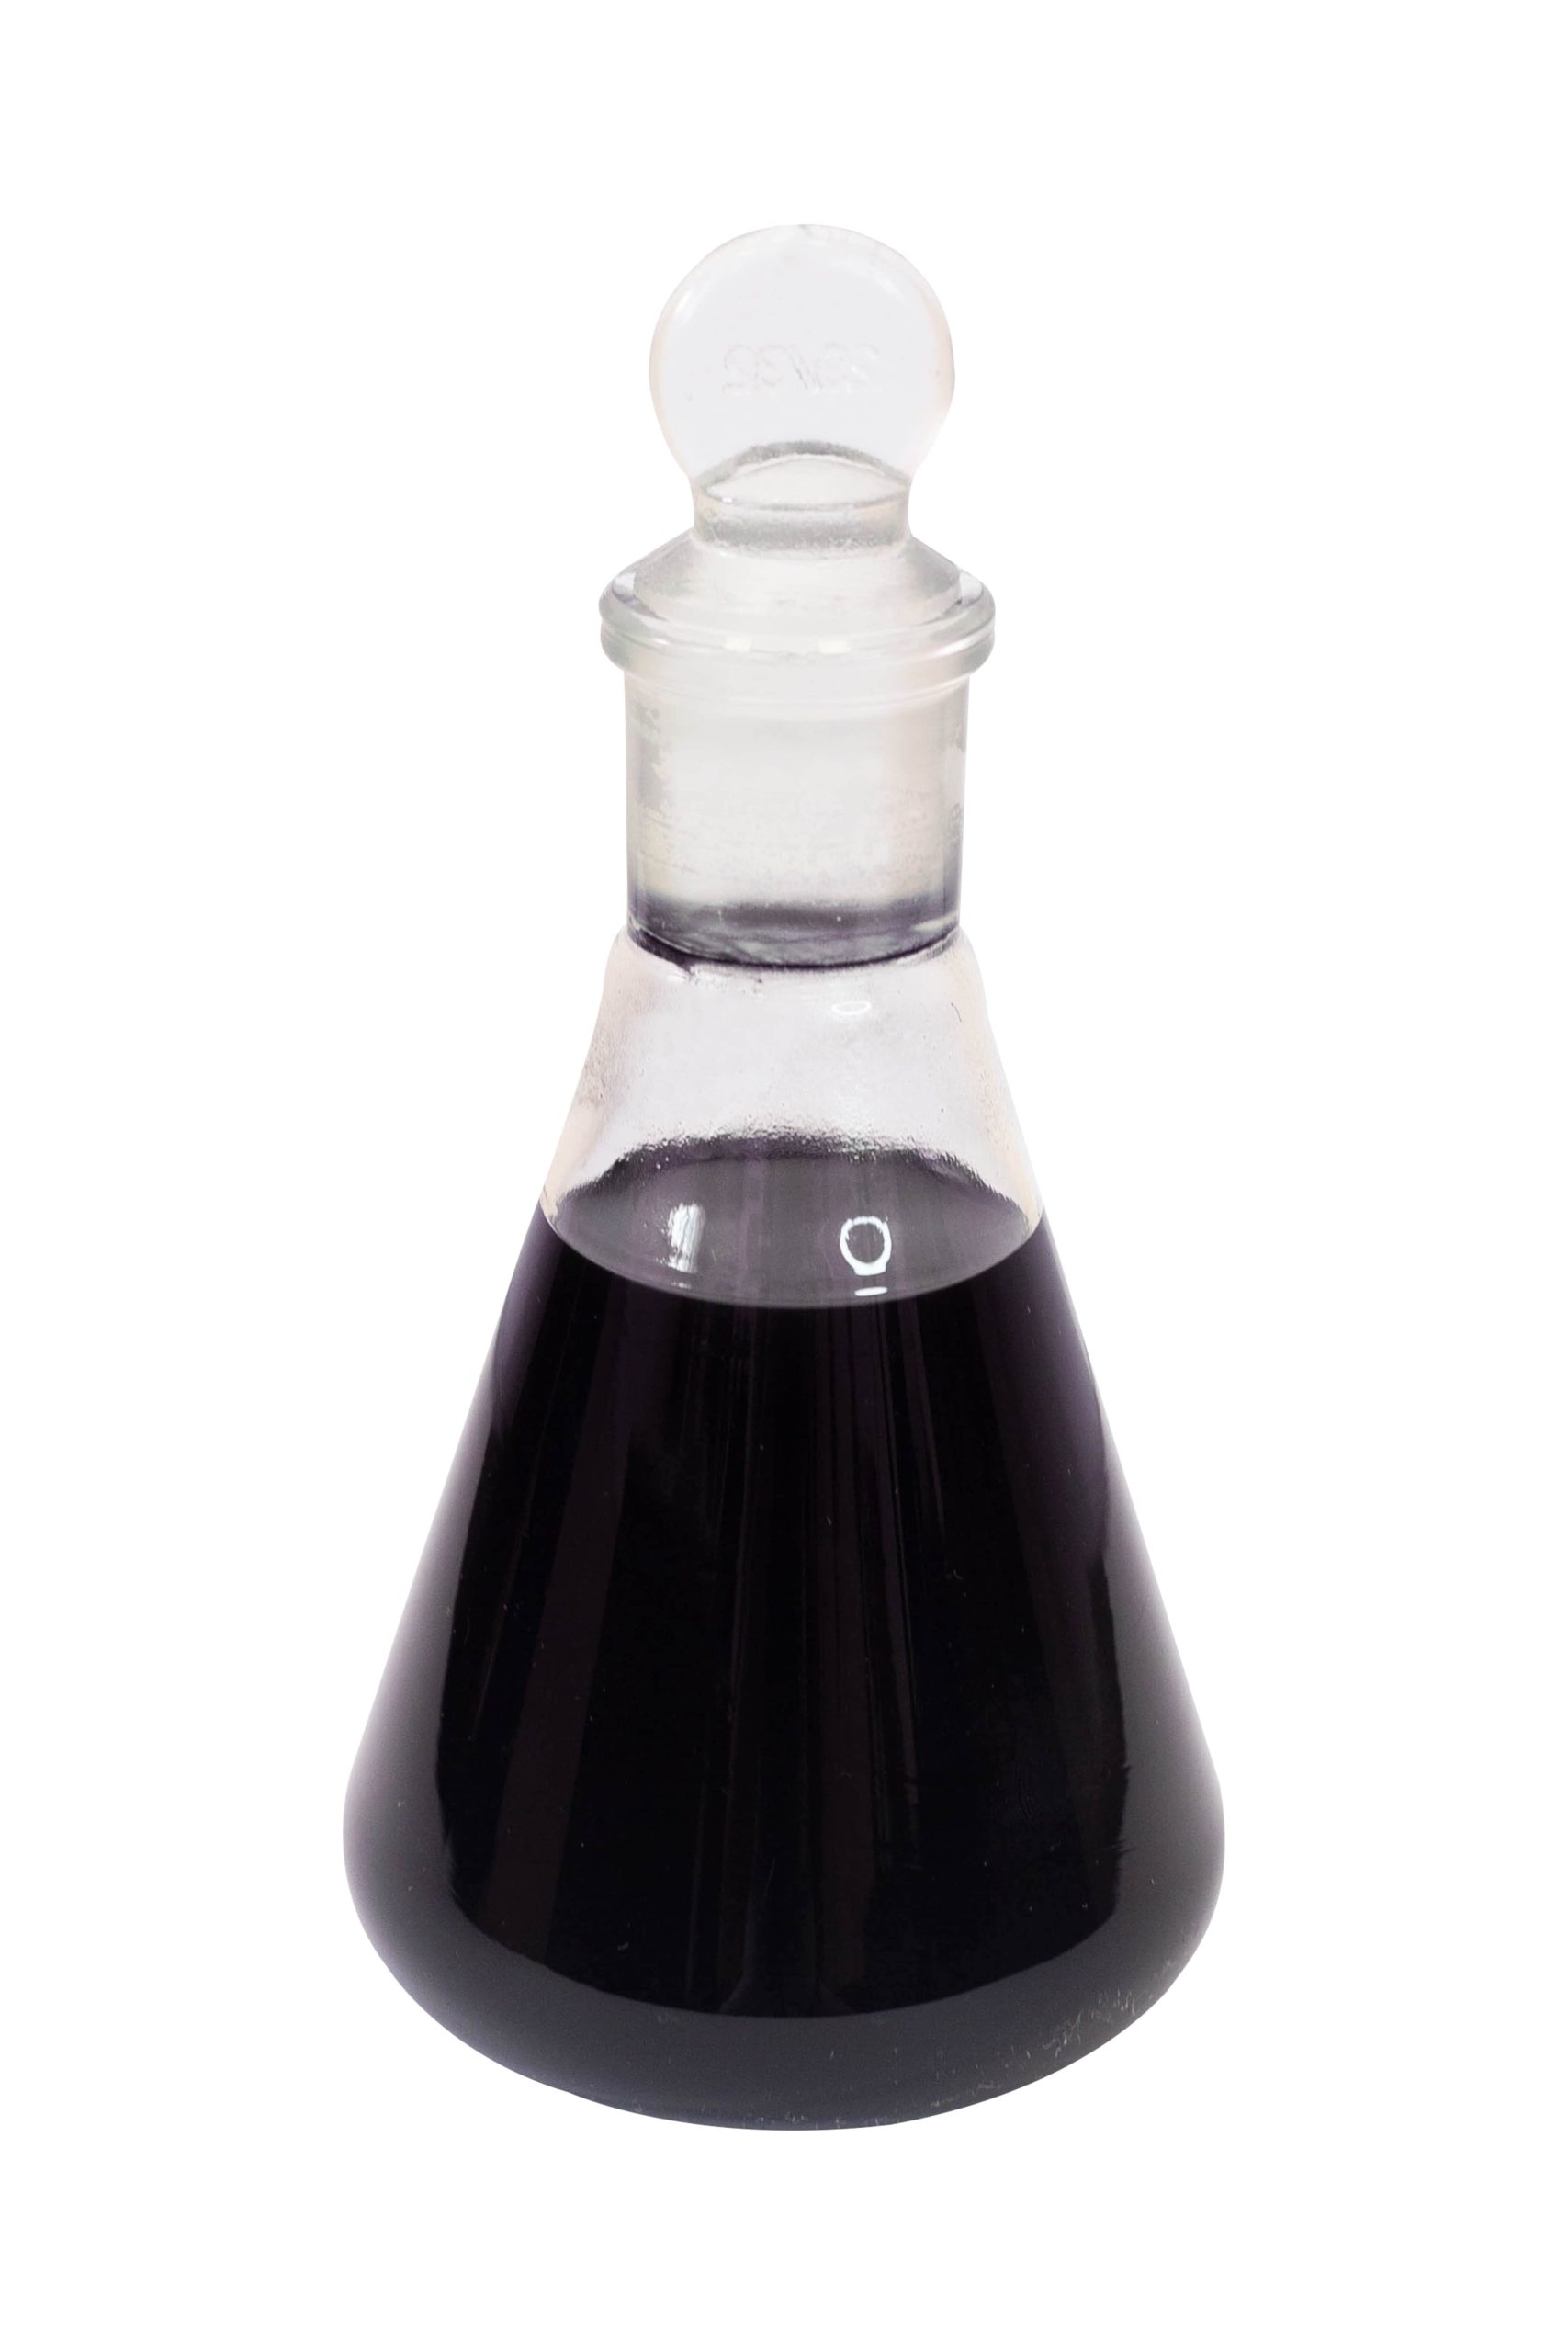 NVB-2M liquid thiokol